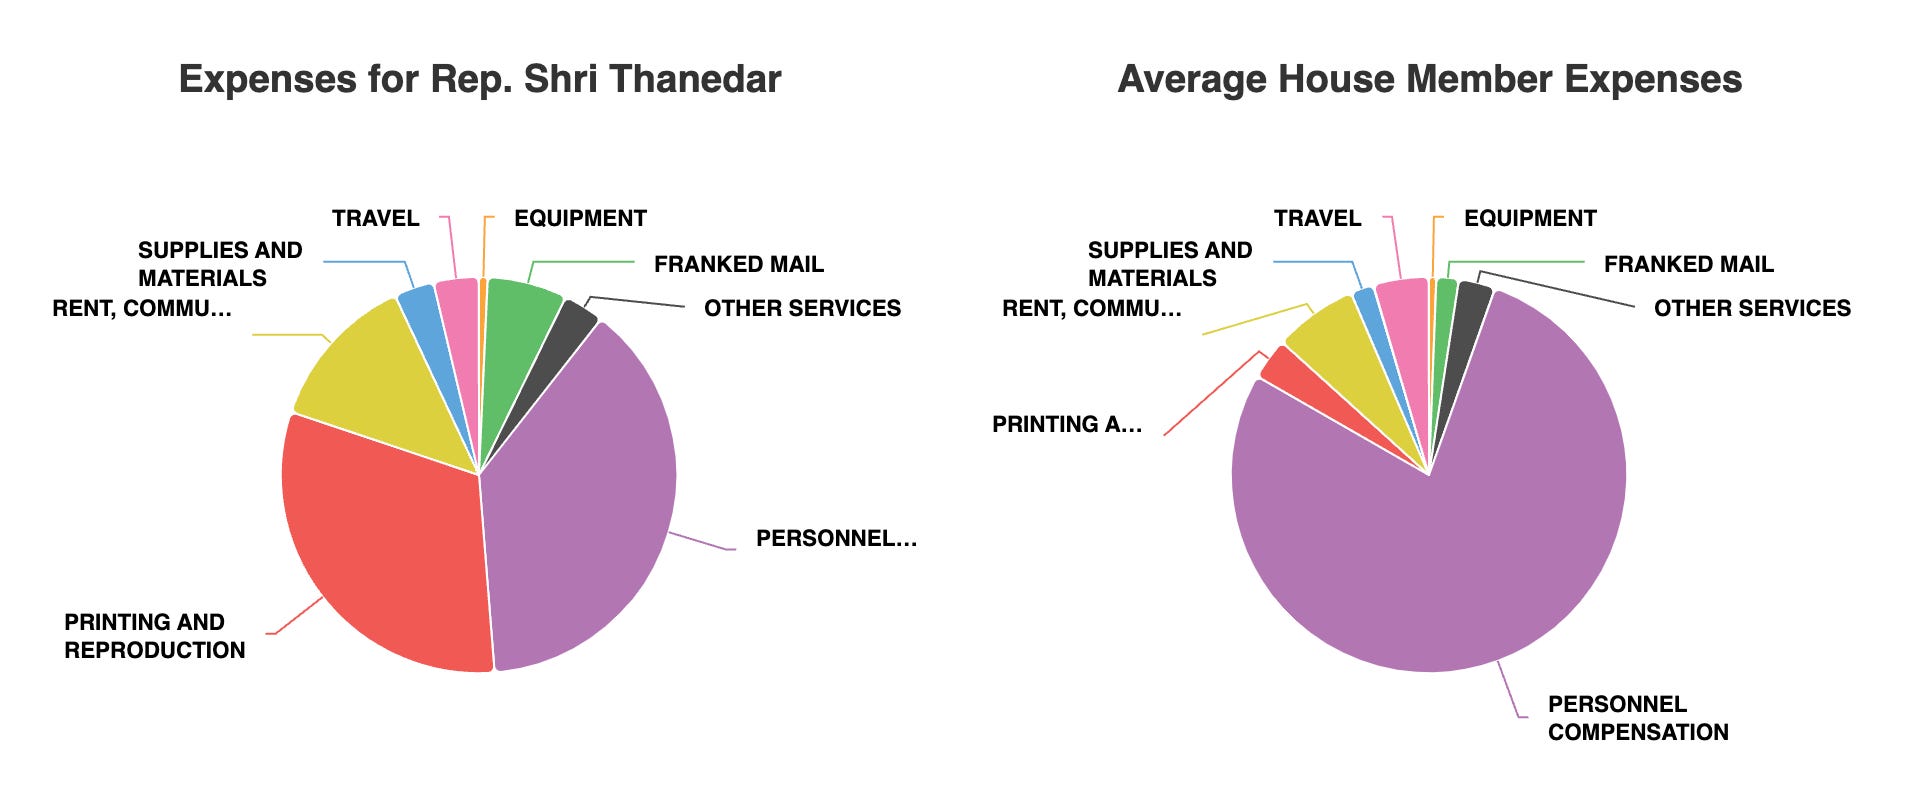 Ein Diagramm, das die Bürokosten des Abgeordneten Shri Thanedar mit denen eines durchschnittlichen Abgeordneten im Repräsentantenhaus im Jahr 2023 vergleicht.